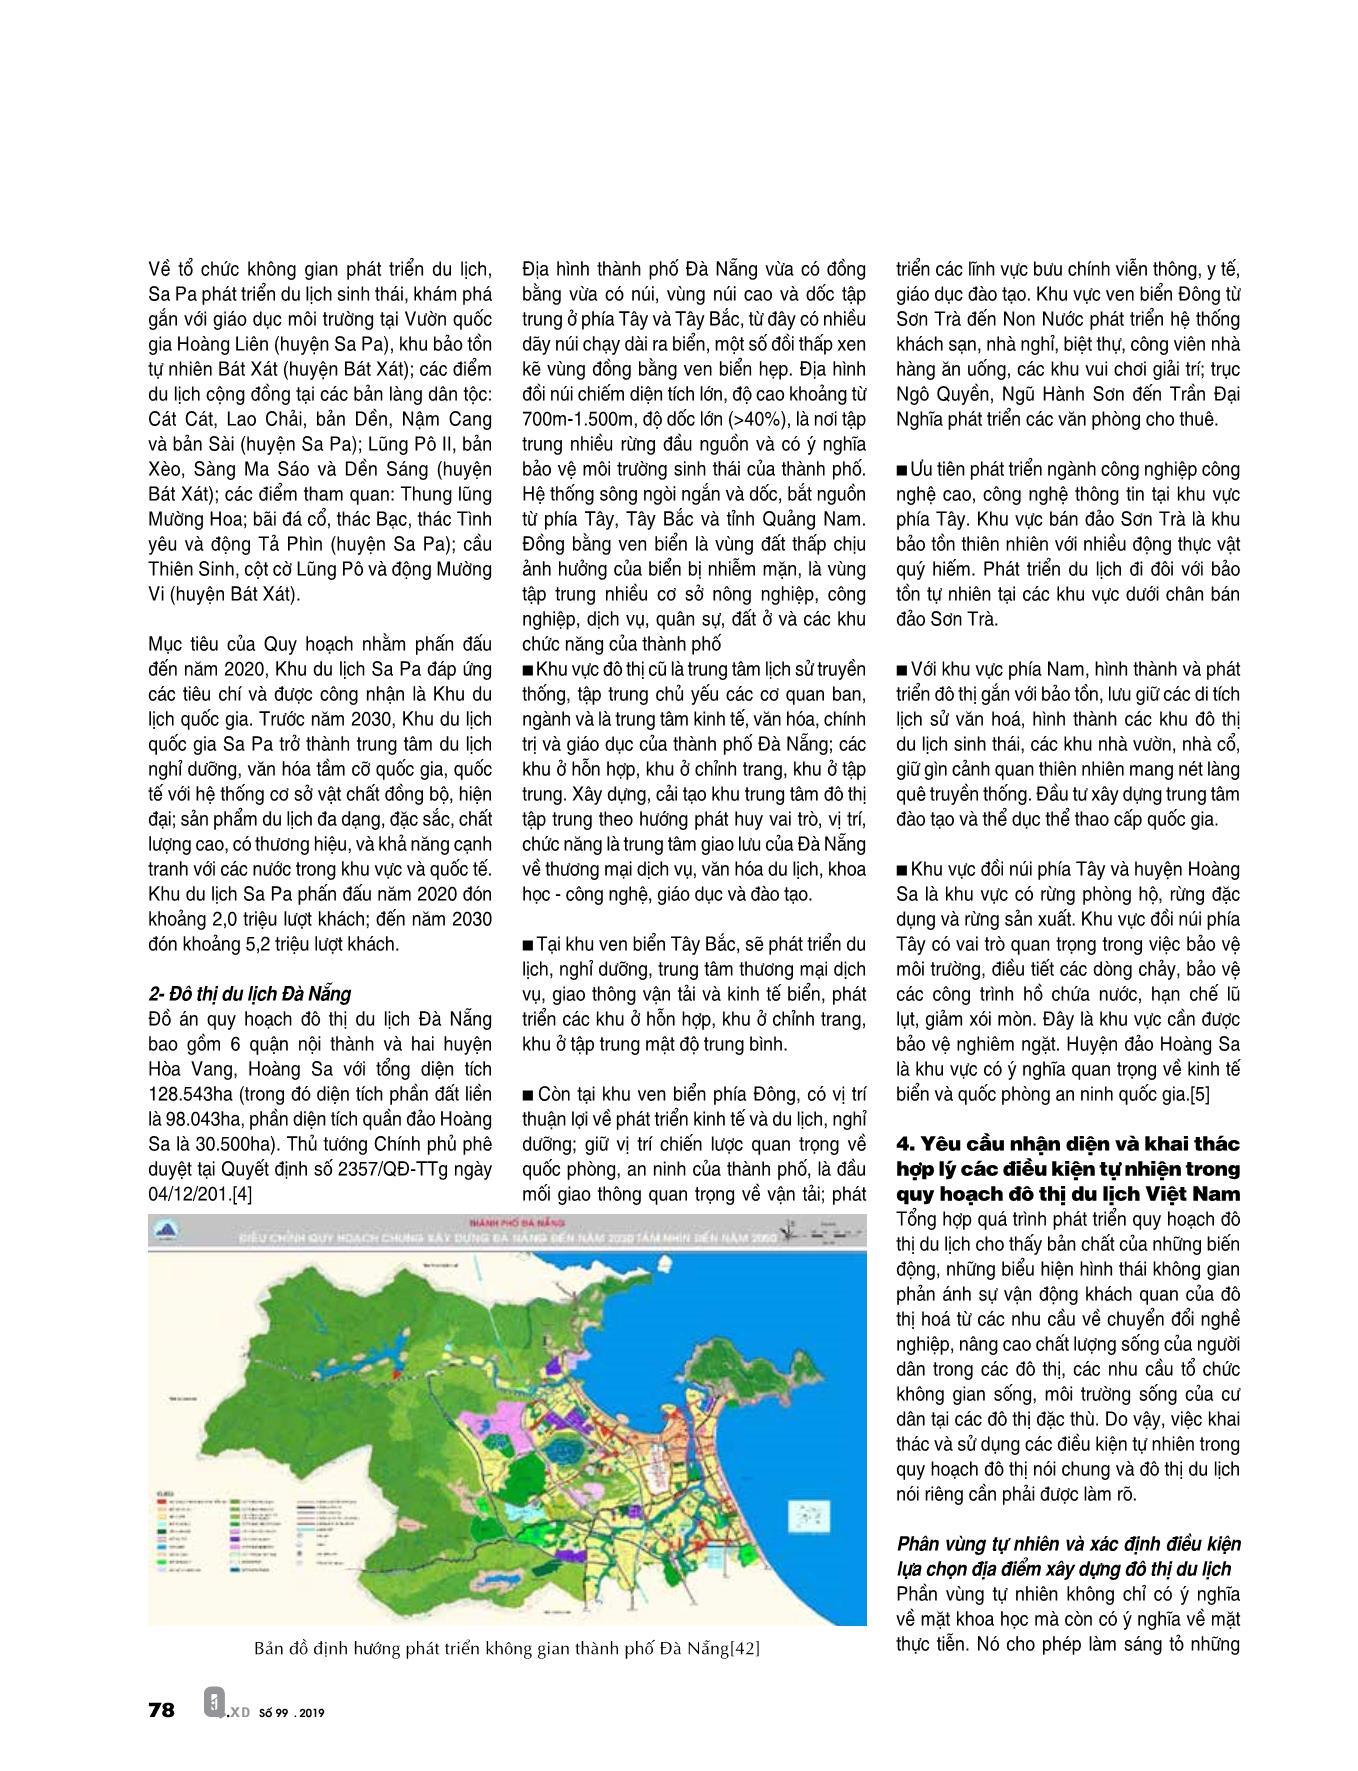 Nhận diện và khai thác hợp lý các điều kiện tự nhiên trong quy hoạch đô thị du lịch Việt Nam trang 5